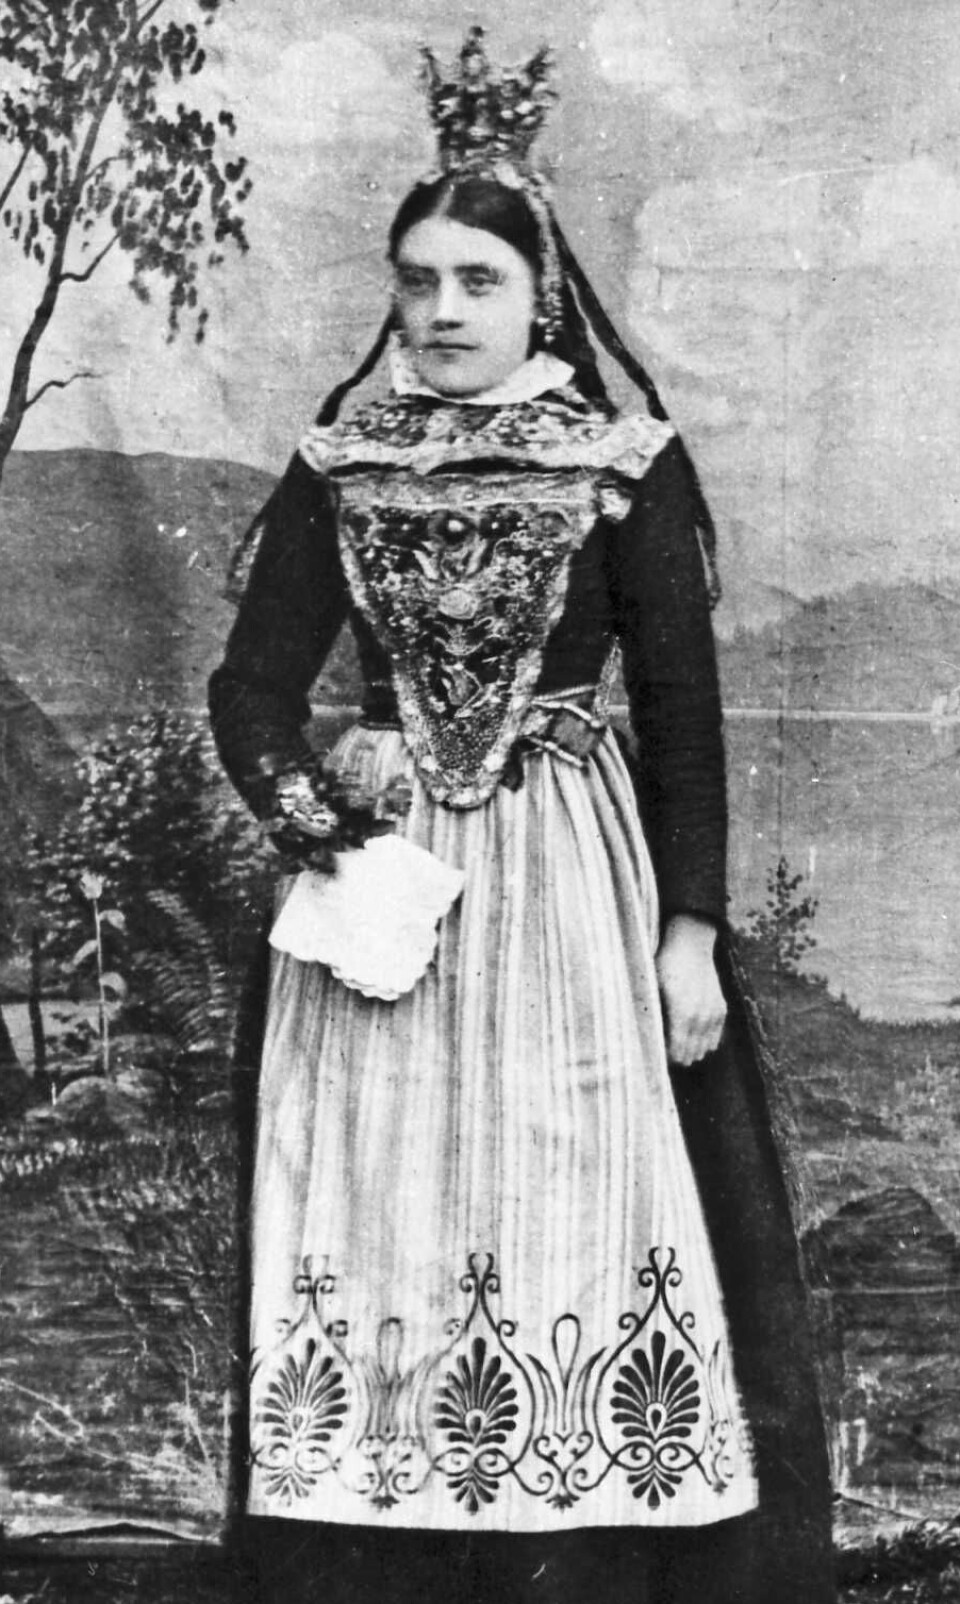 Jente fra Dalsbygda pyntet som brud etter lokale tradisjoner i 1868.